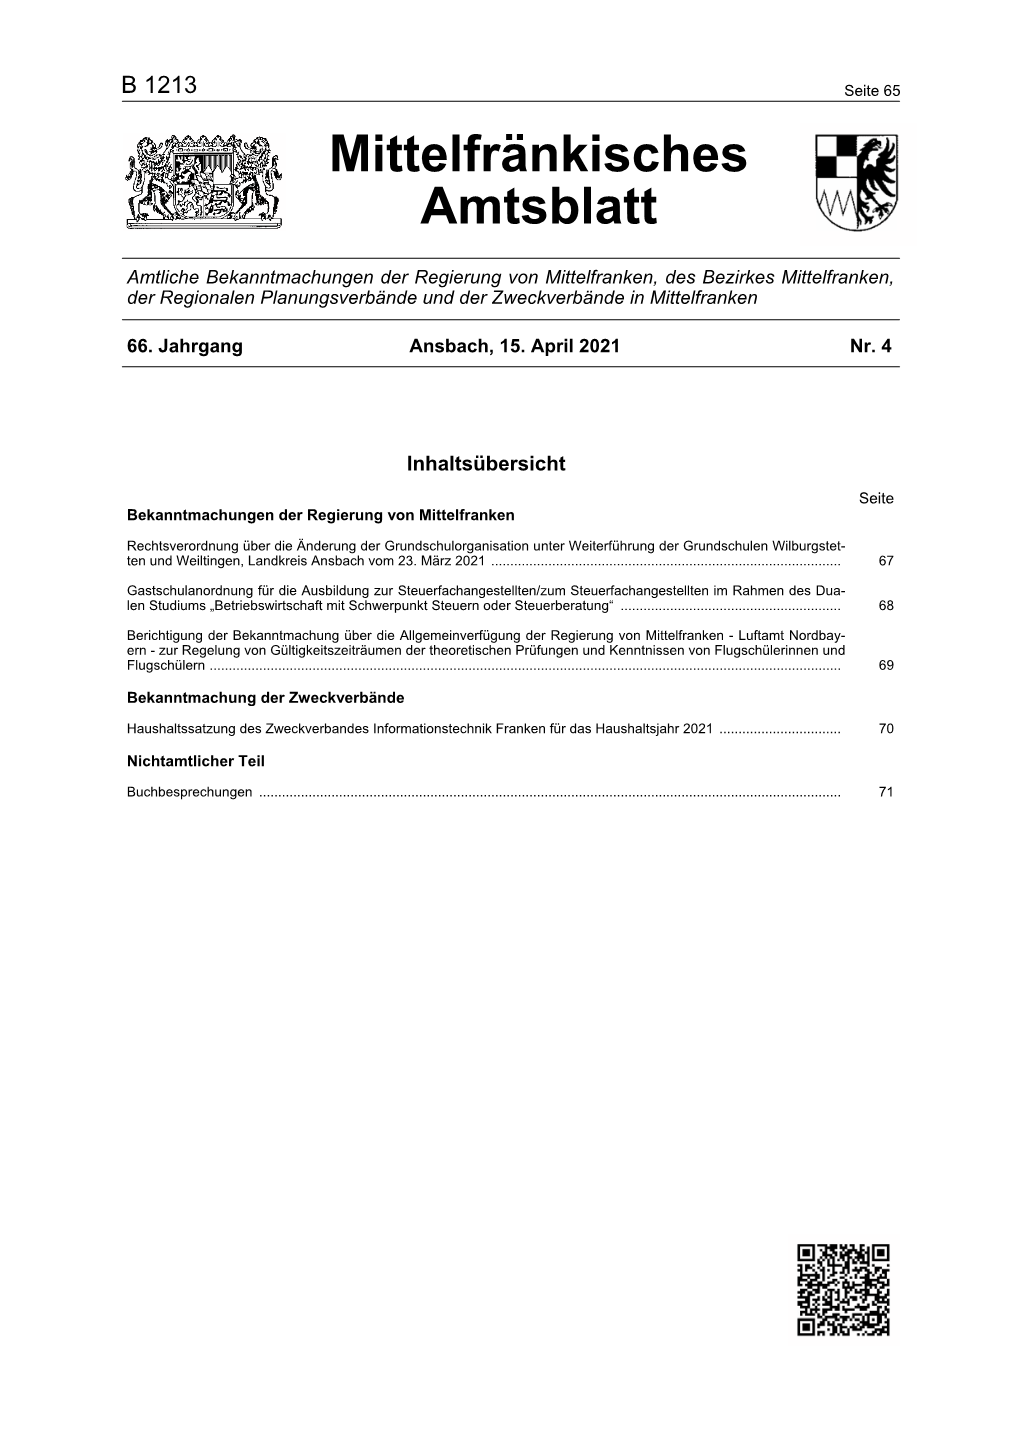 Mittelfränkisches Amtsblatt 04 2021